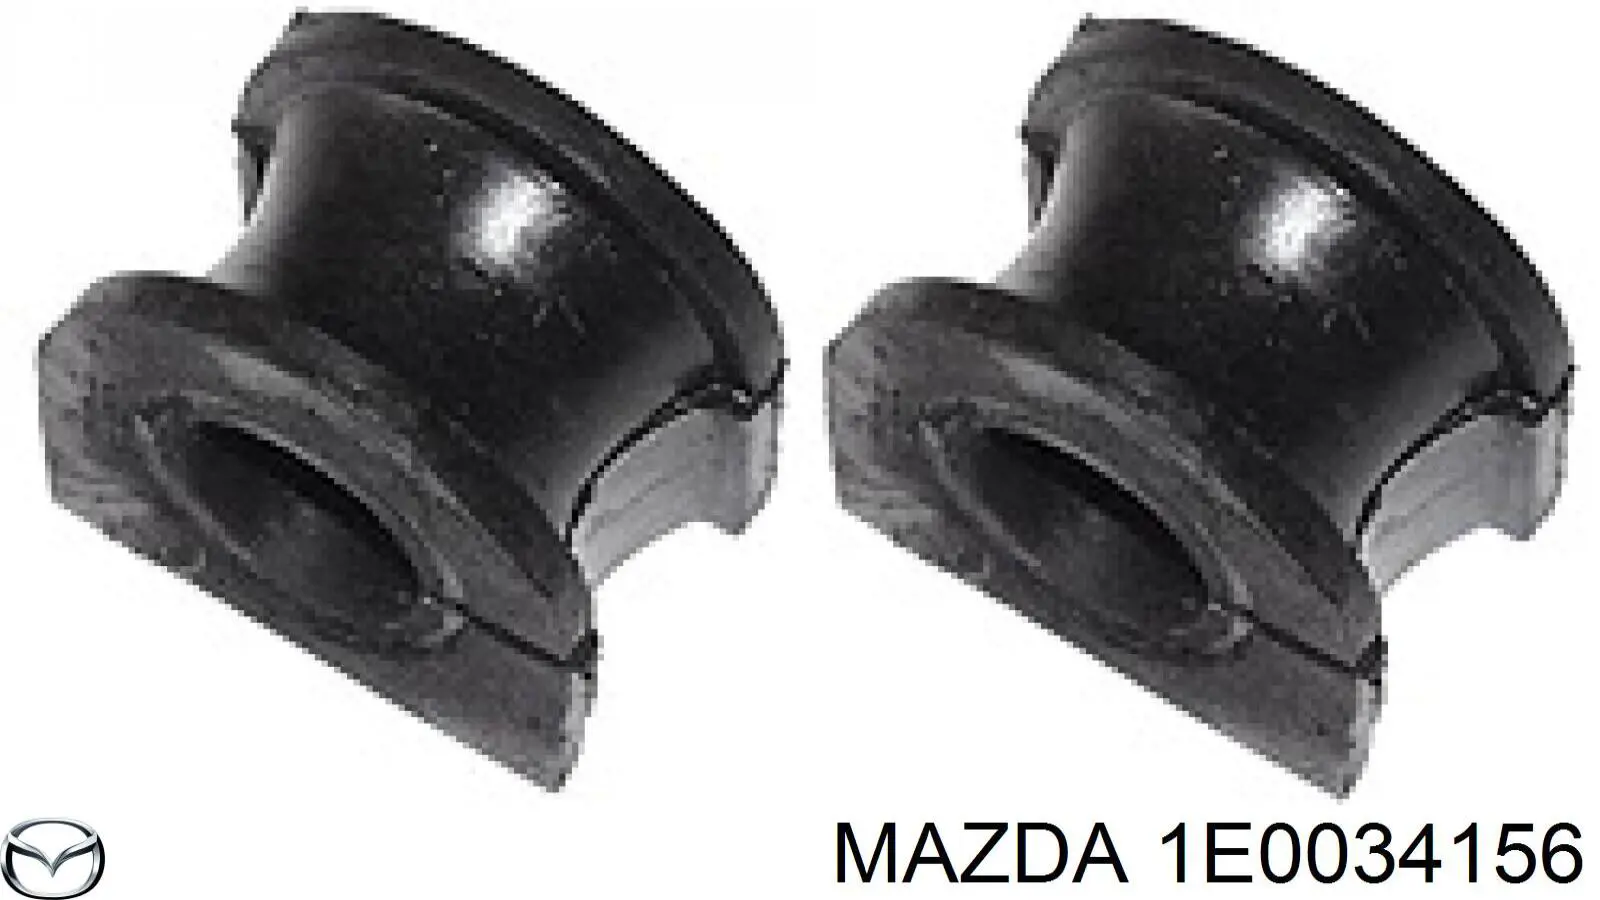 1E0034156 Mazda casquillo de barra estabilizadora delantera